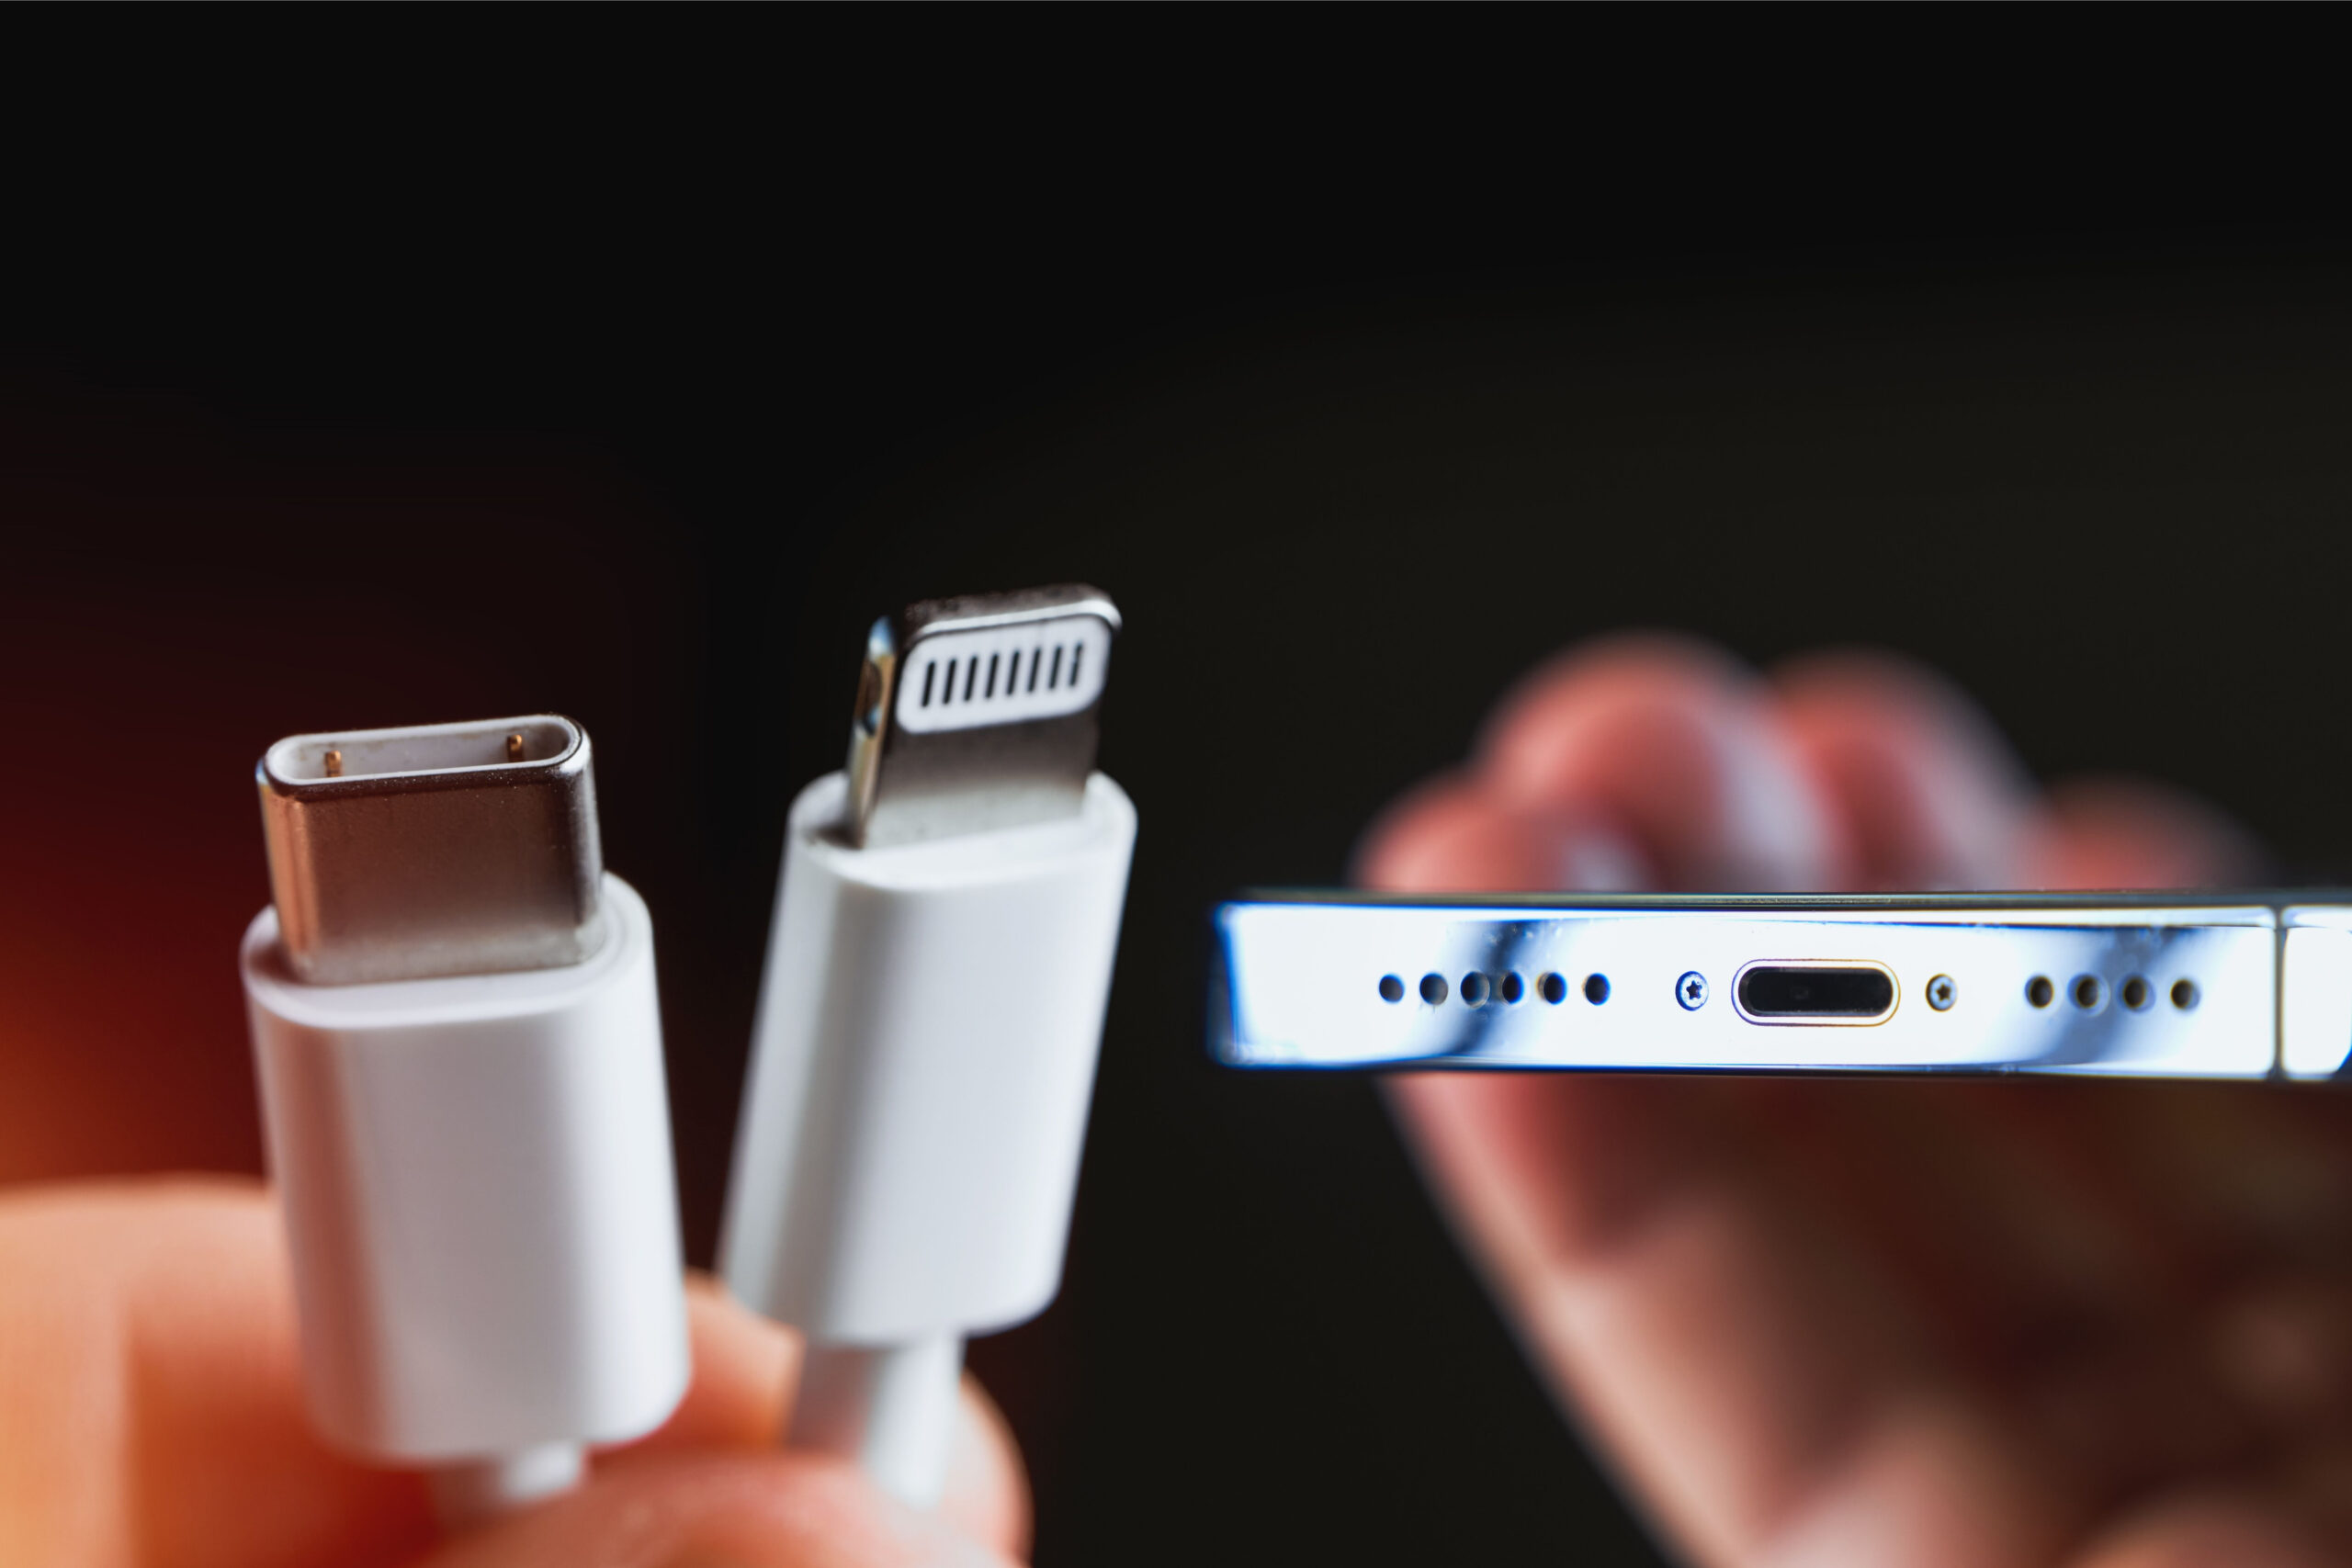 iPhone Xs et Xr : pas de nouveau chargeur USB, mais une recharge